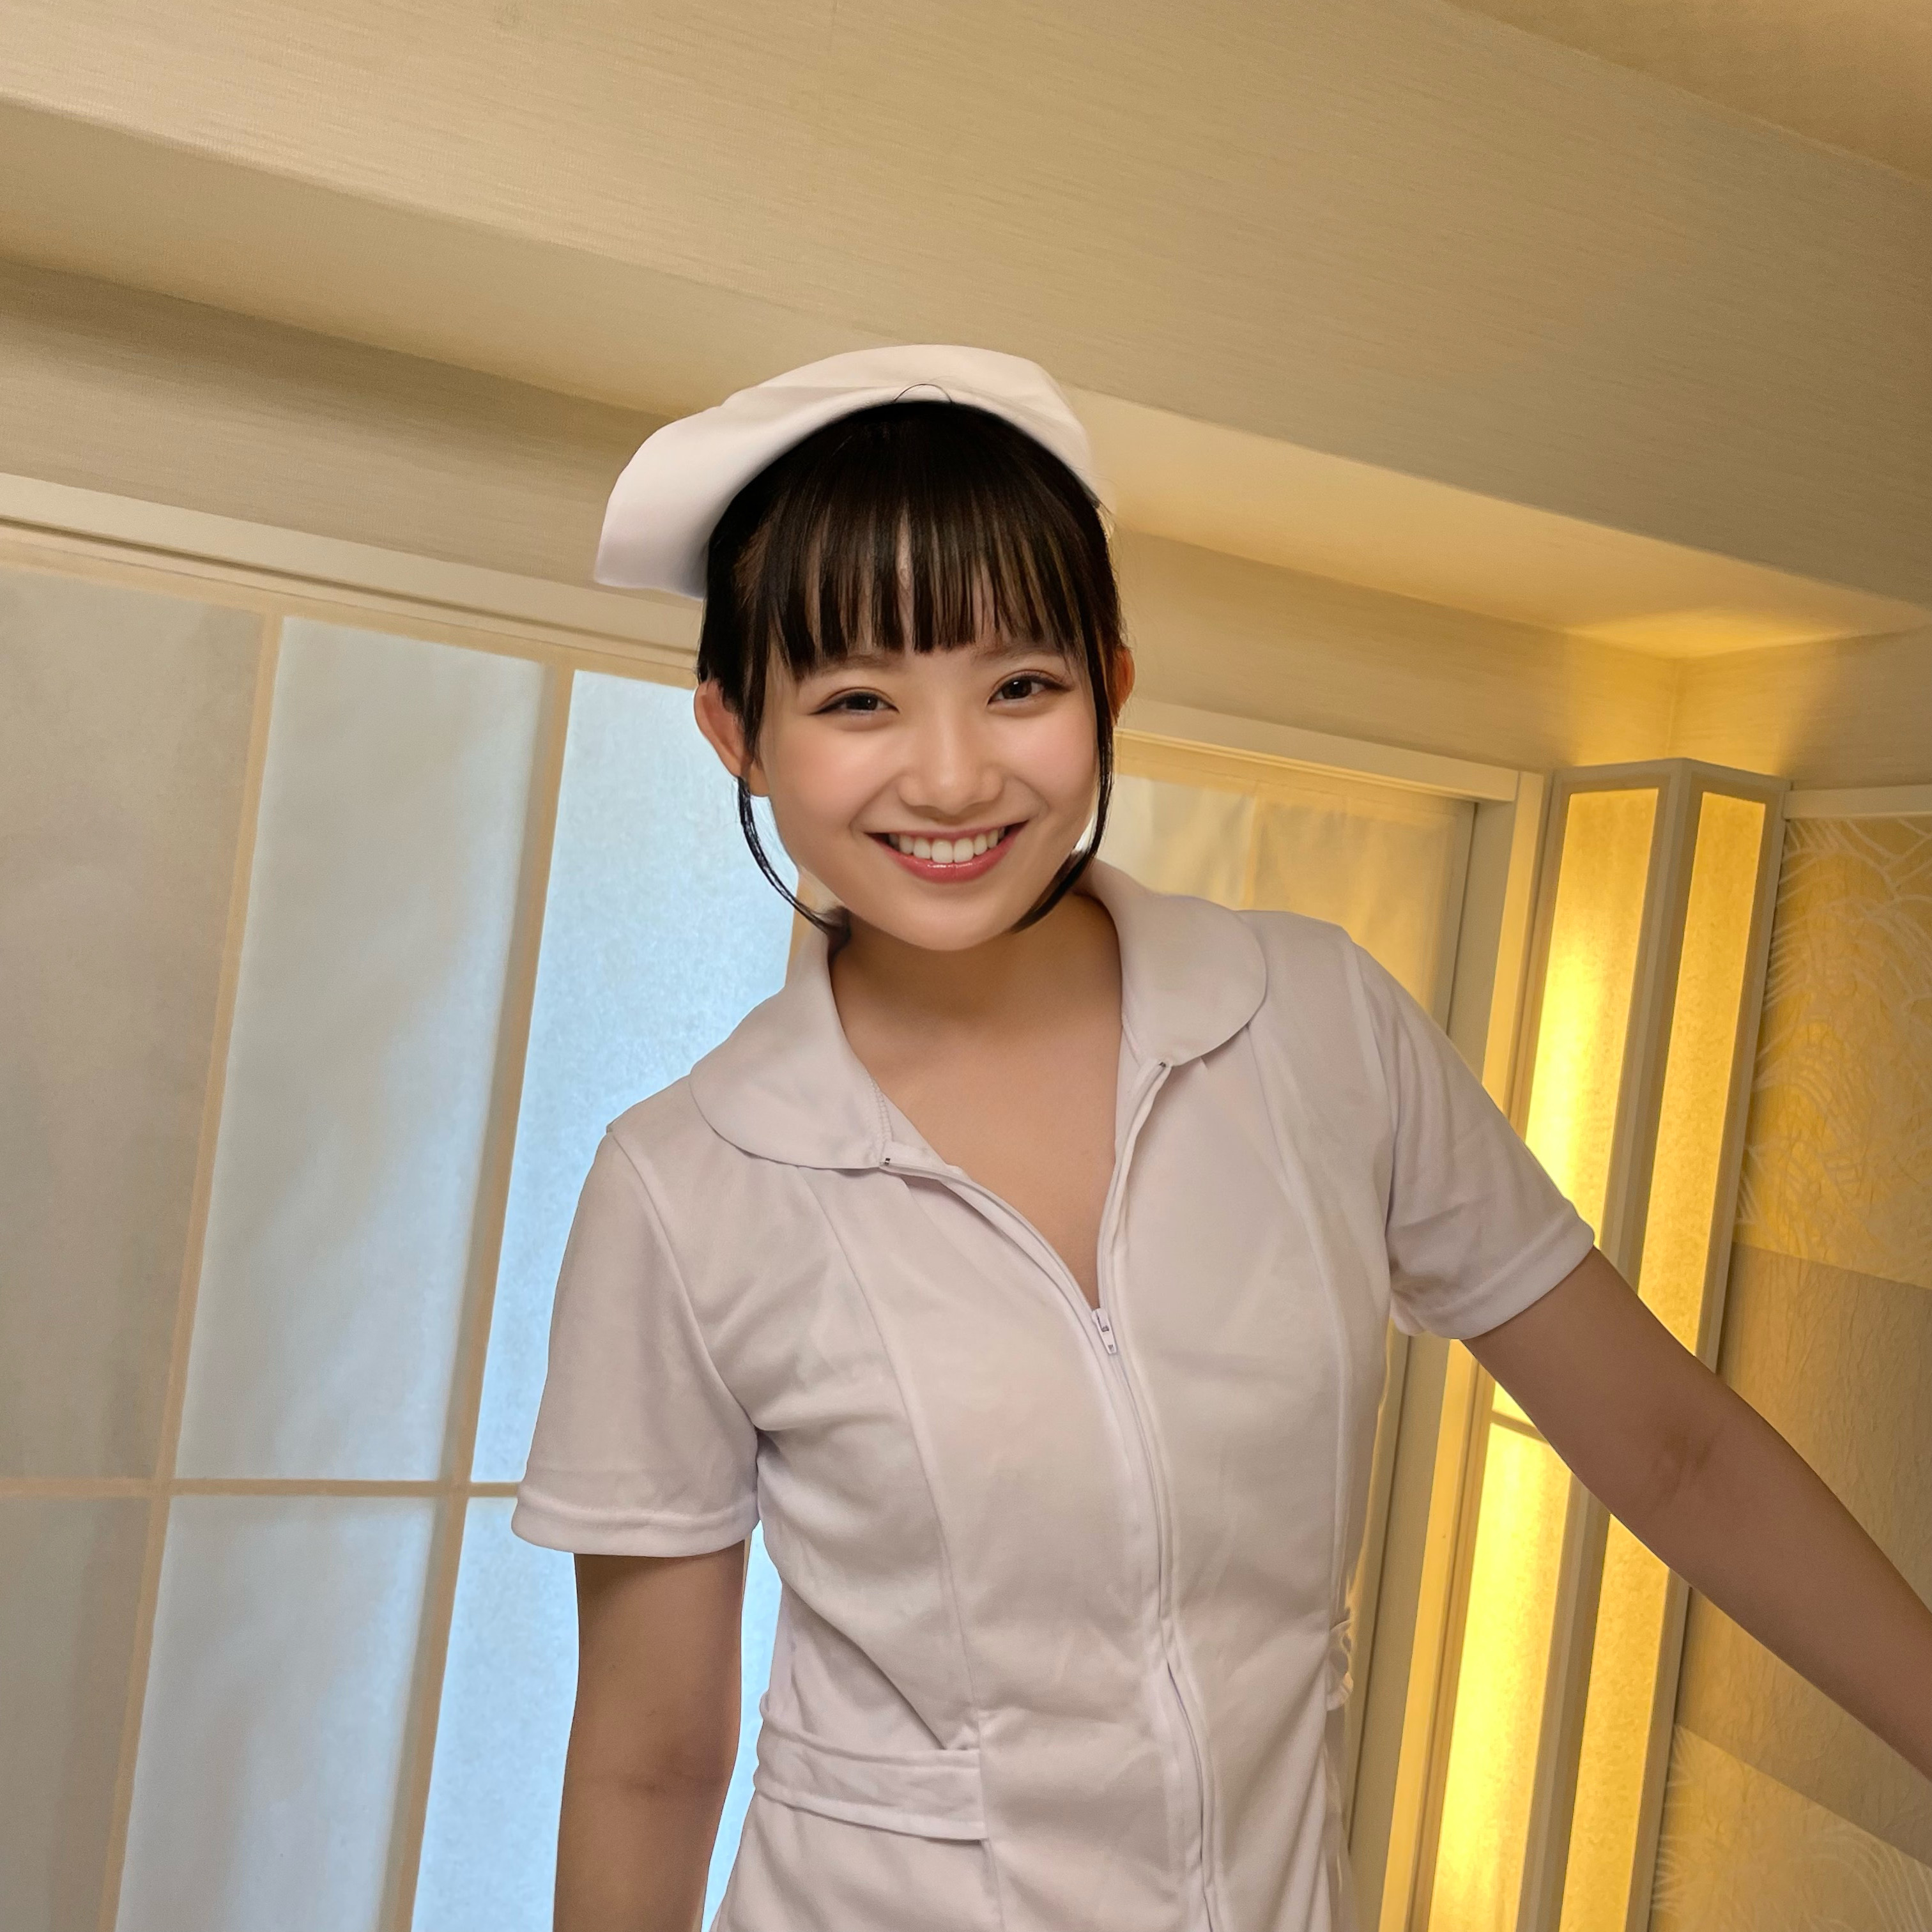 FC2 PPV 2993310 Book ◯ Baby face non-chan nurse similar to Nozomi, J ◯ uniform, bunny girl anything